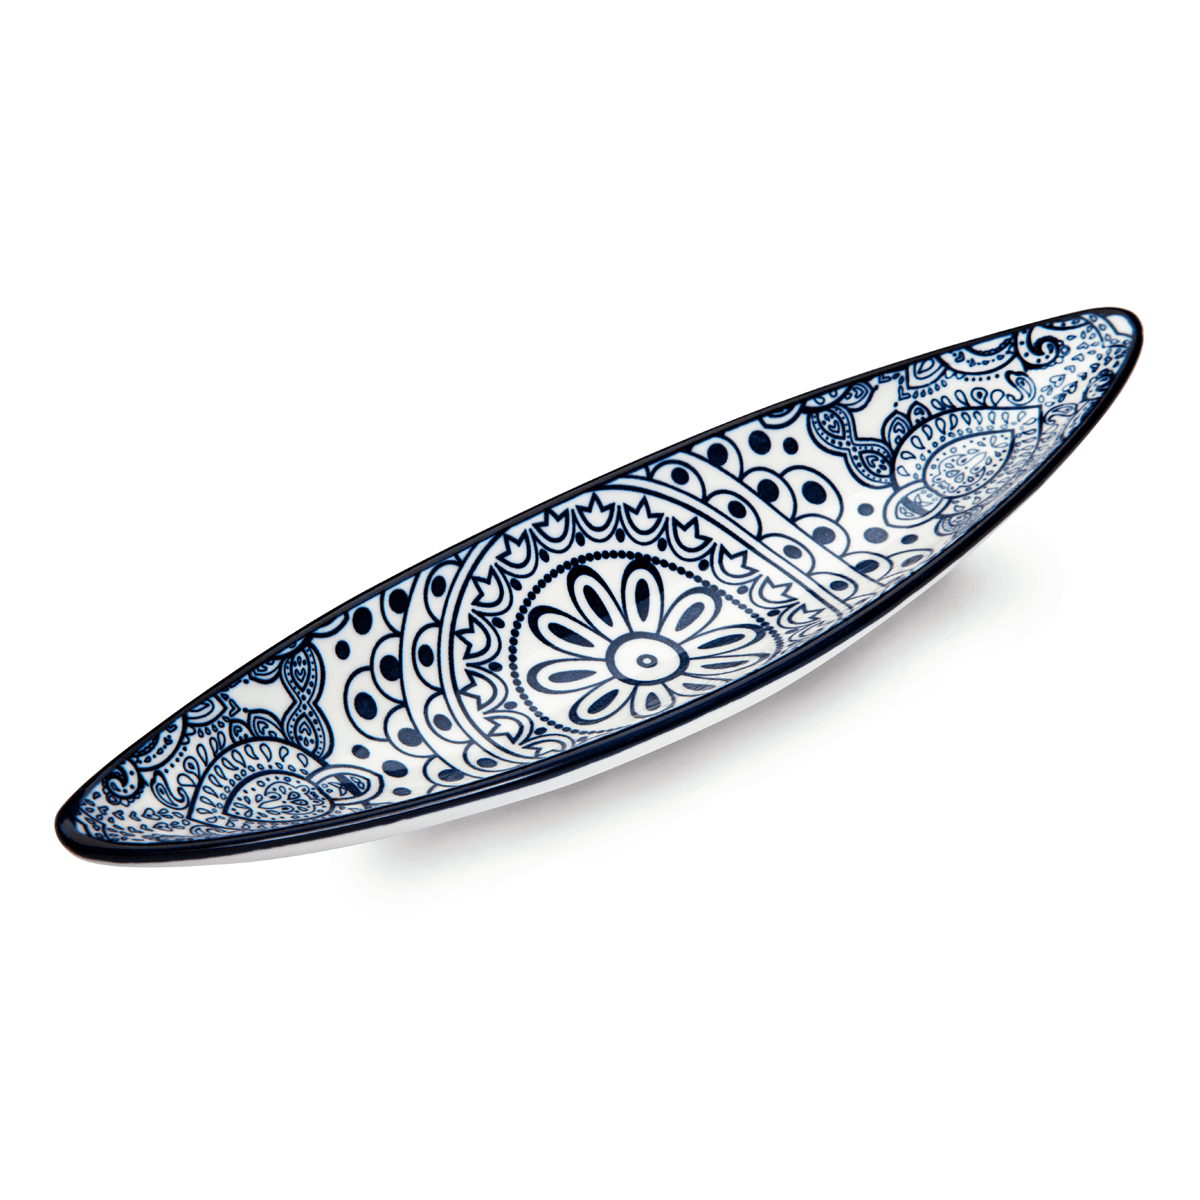 Che Brucia Arabesque Blue Porcelain Boat Shape Dish 23 cm/ 9" Blue Ivory Porcelain